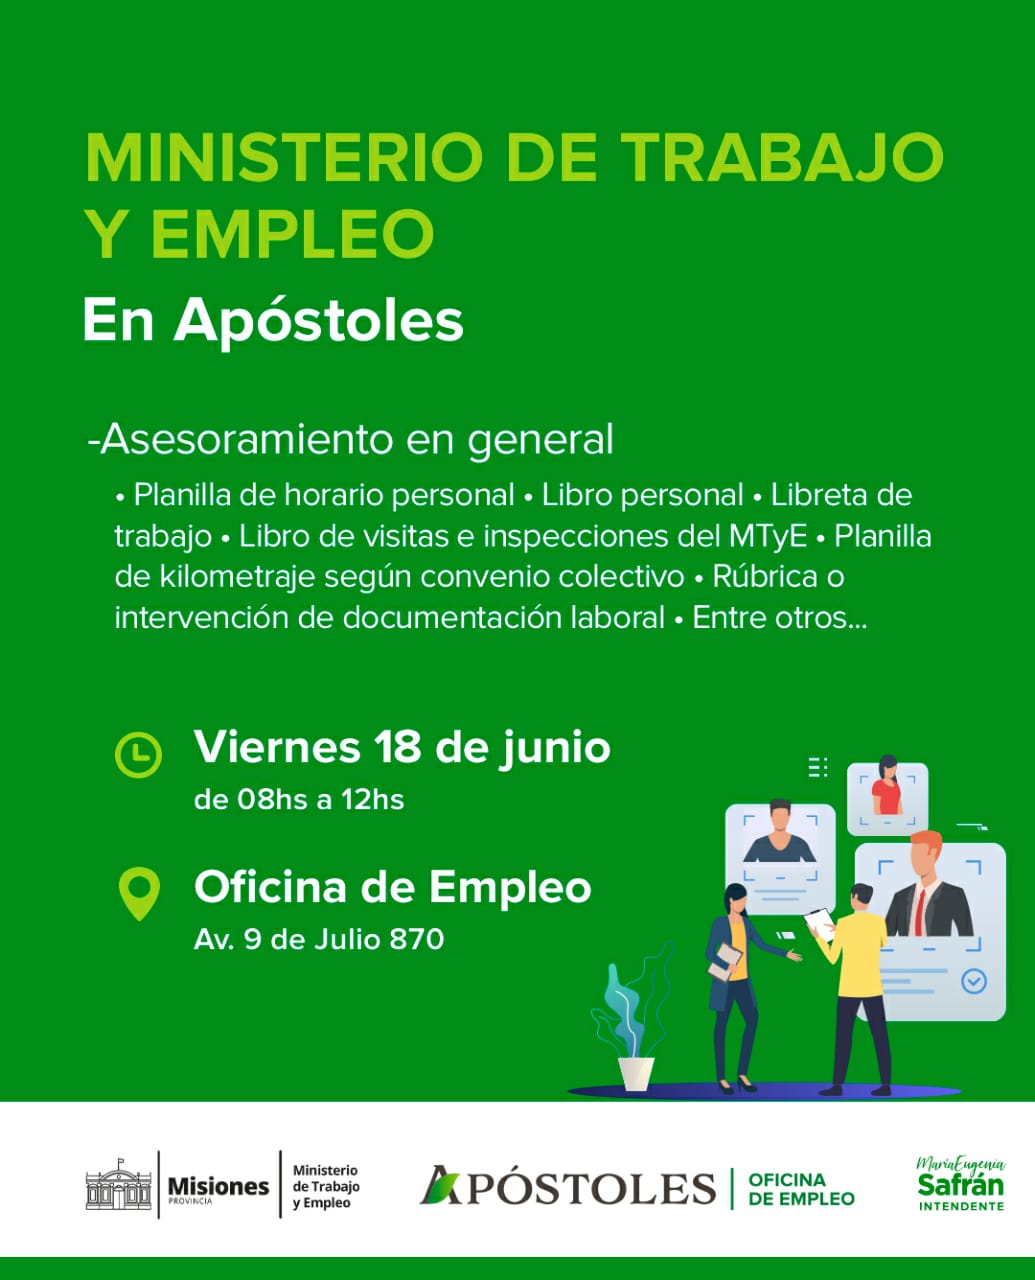 El próximo viernes 18 de junio el Ministerio de Trabajo brindará asesoramiento general a la ciudadanía apostoleña